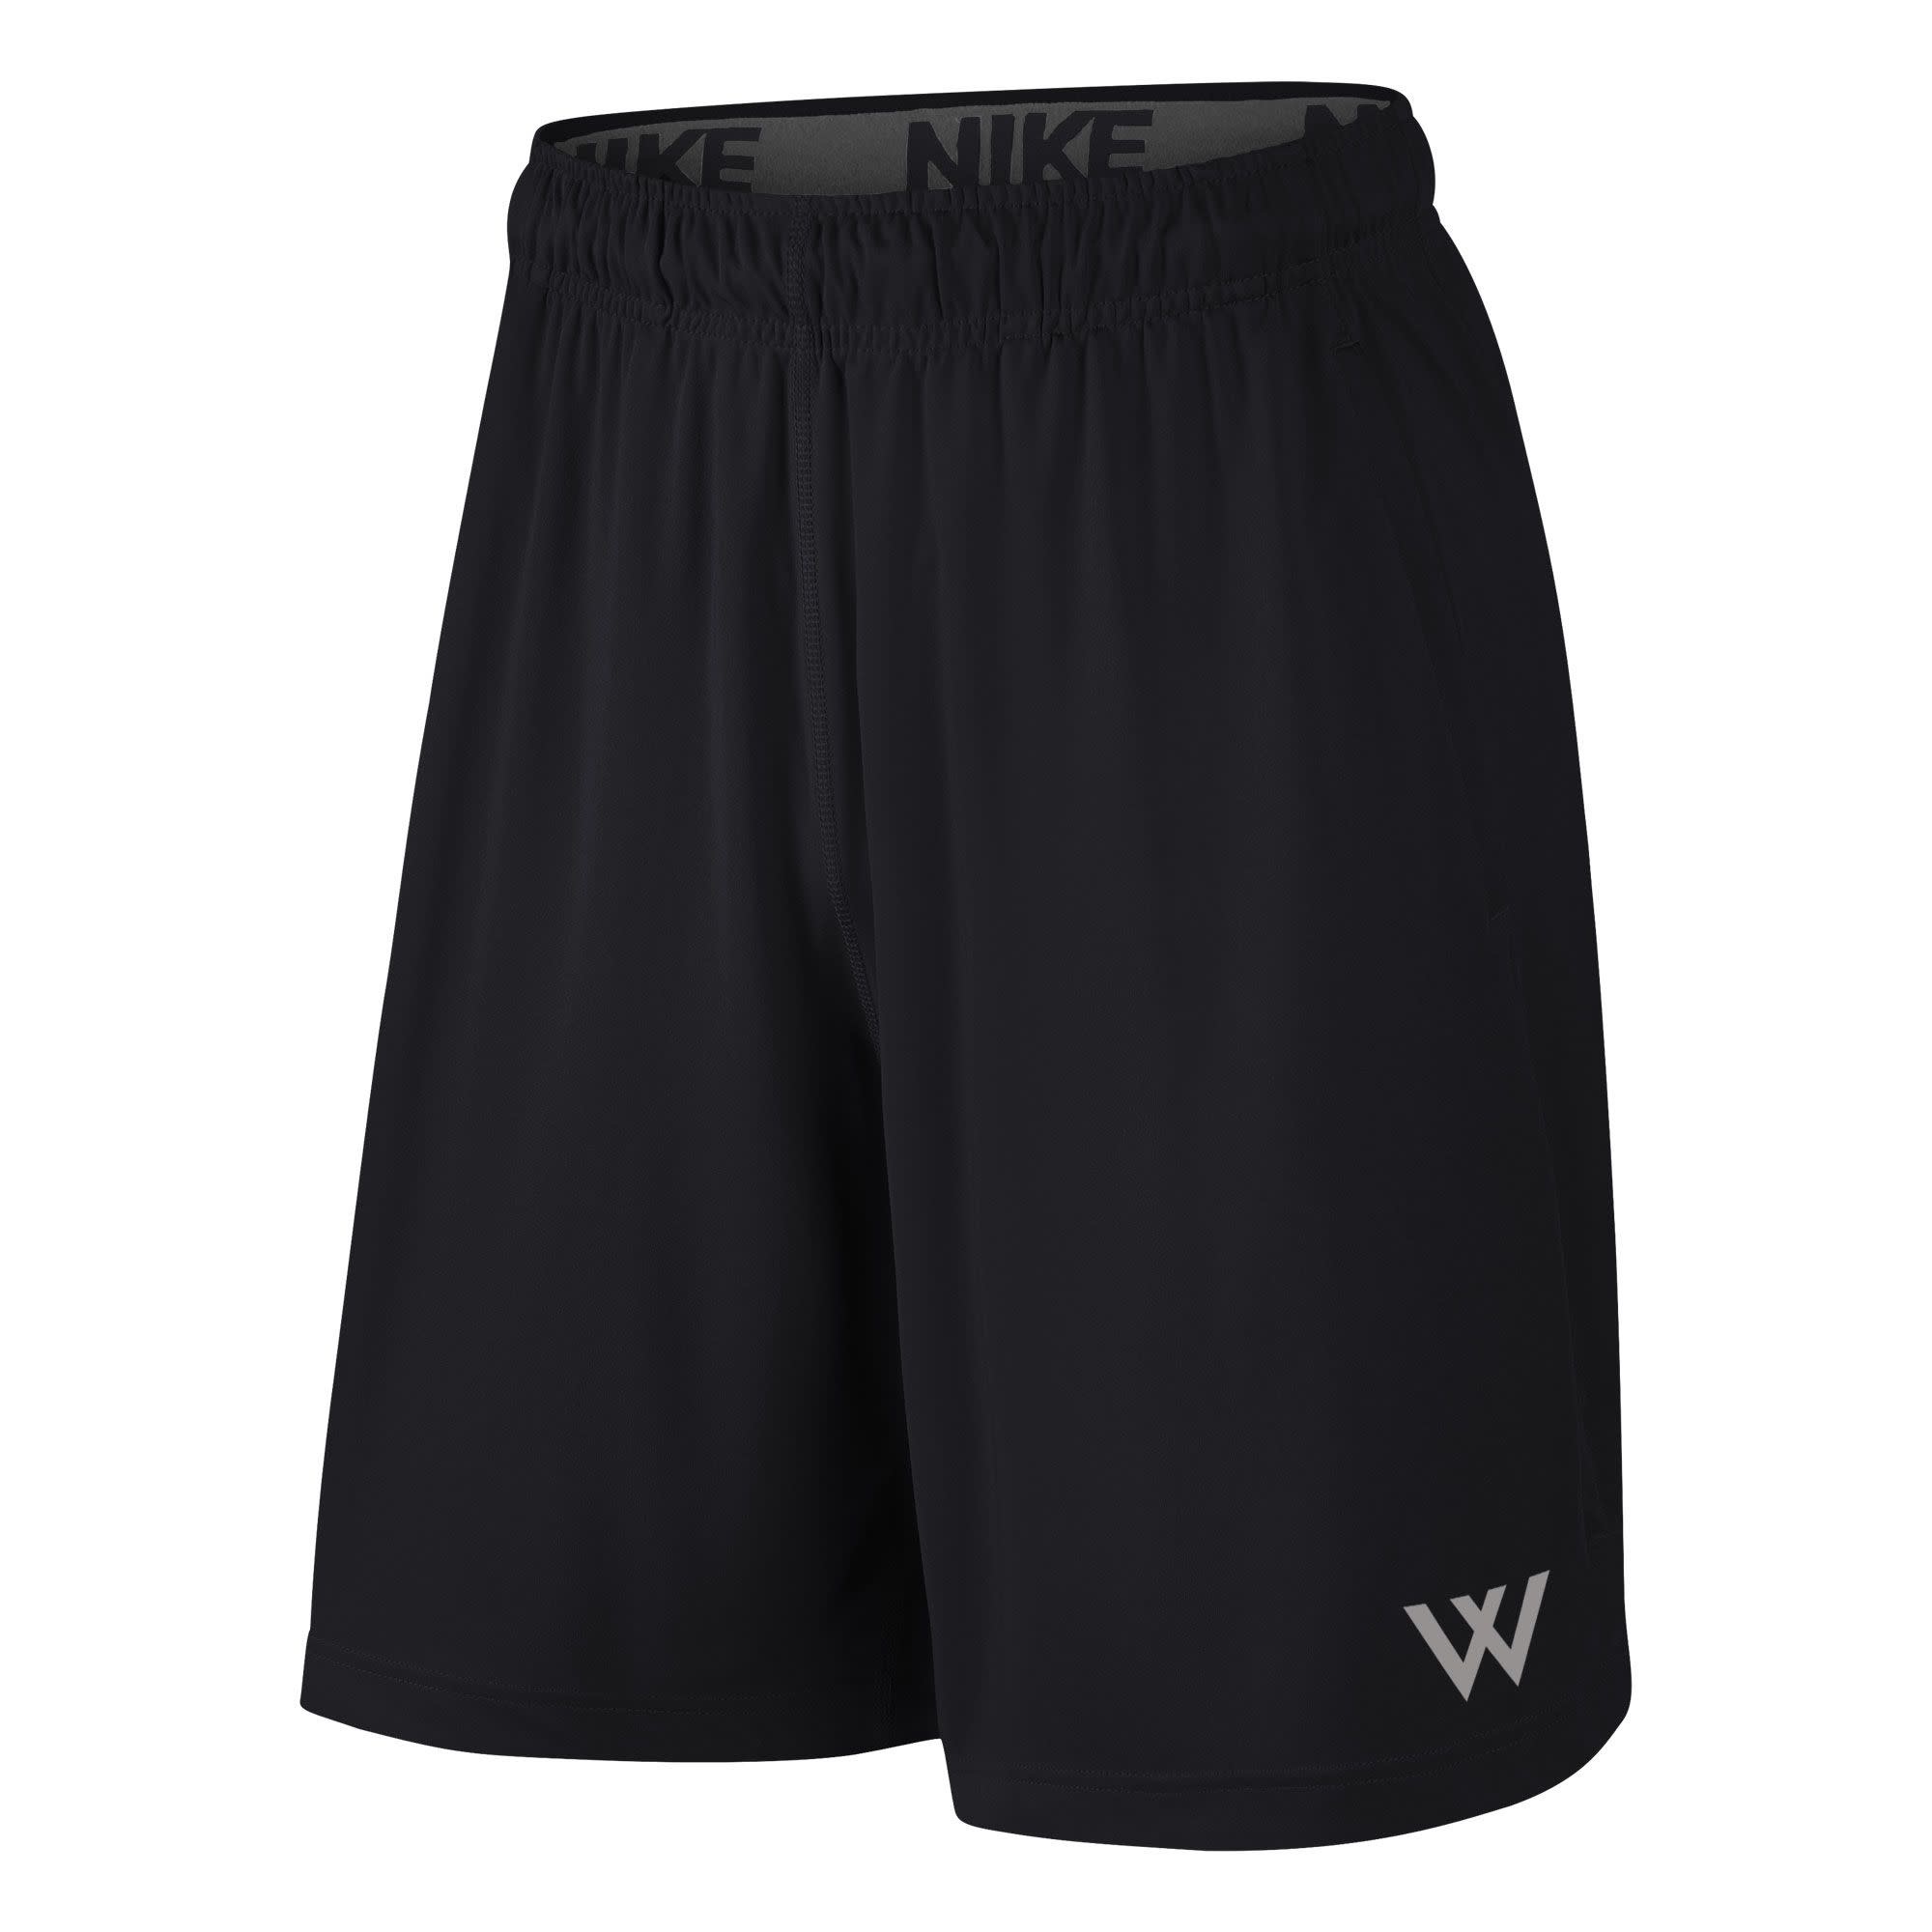 Nike Shorts: Nike Fly Shorts